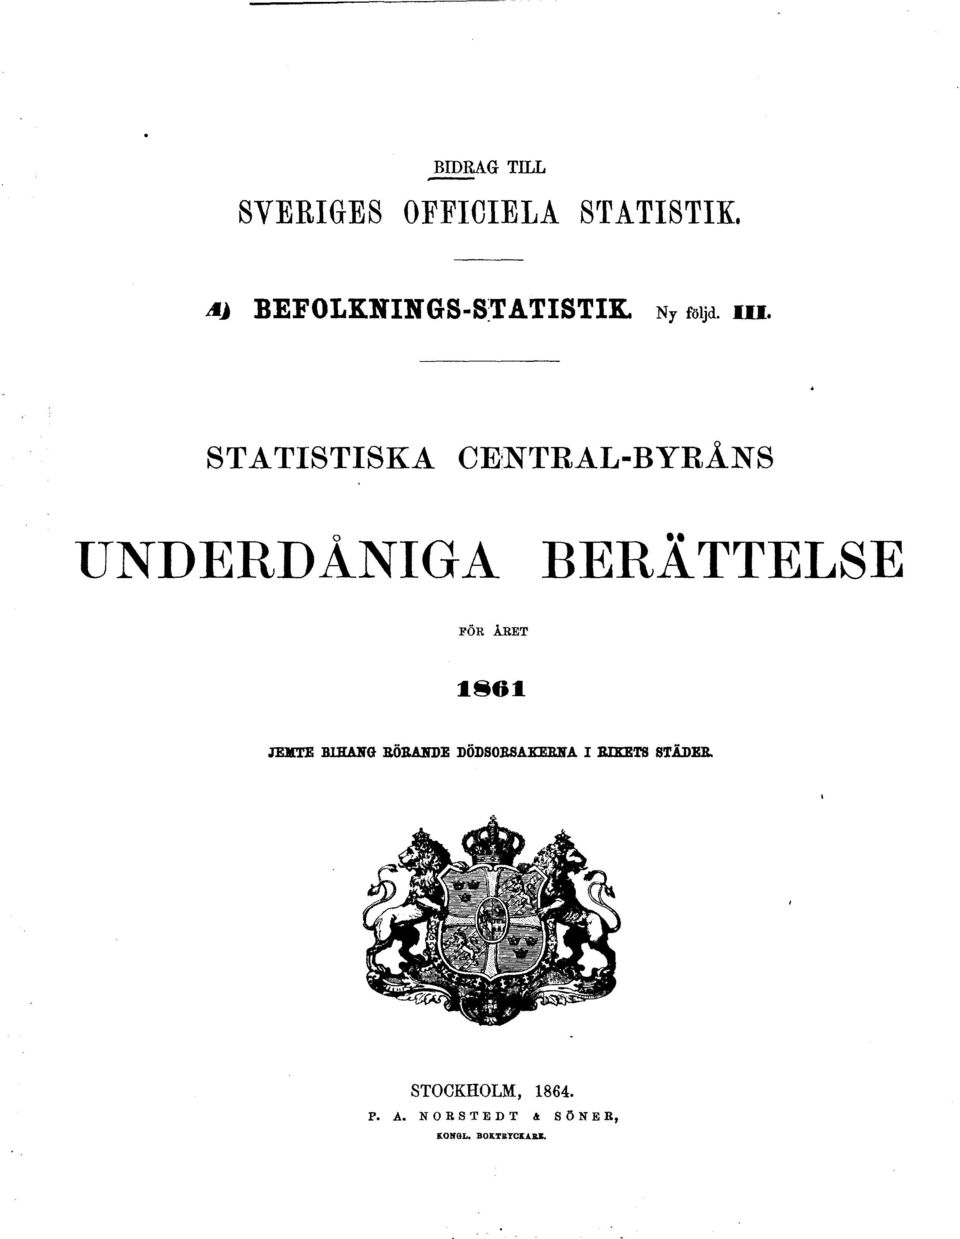 STATISTISKA CENTRAL-BYRÅNS UNDERDÅNIGA BERÄTTELSE FÖR ÅKET 1861